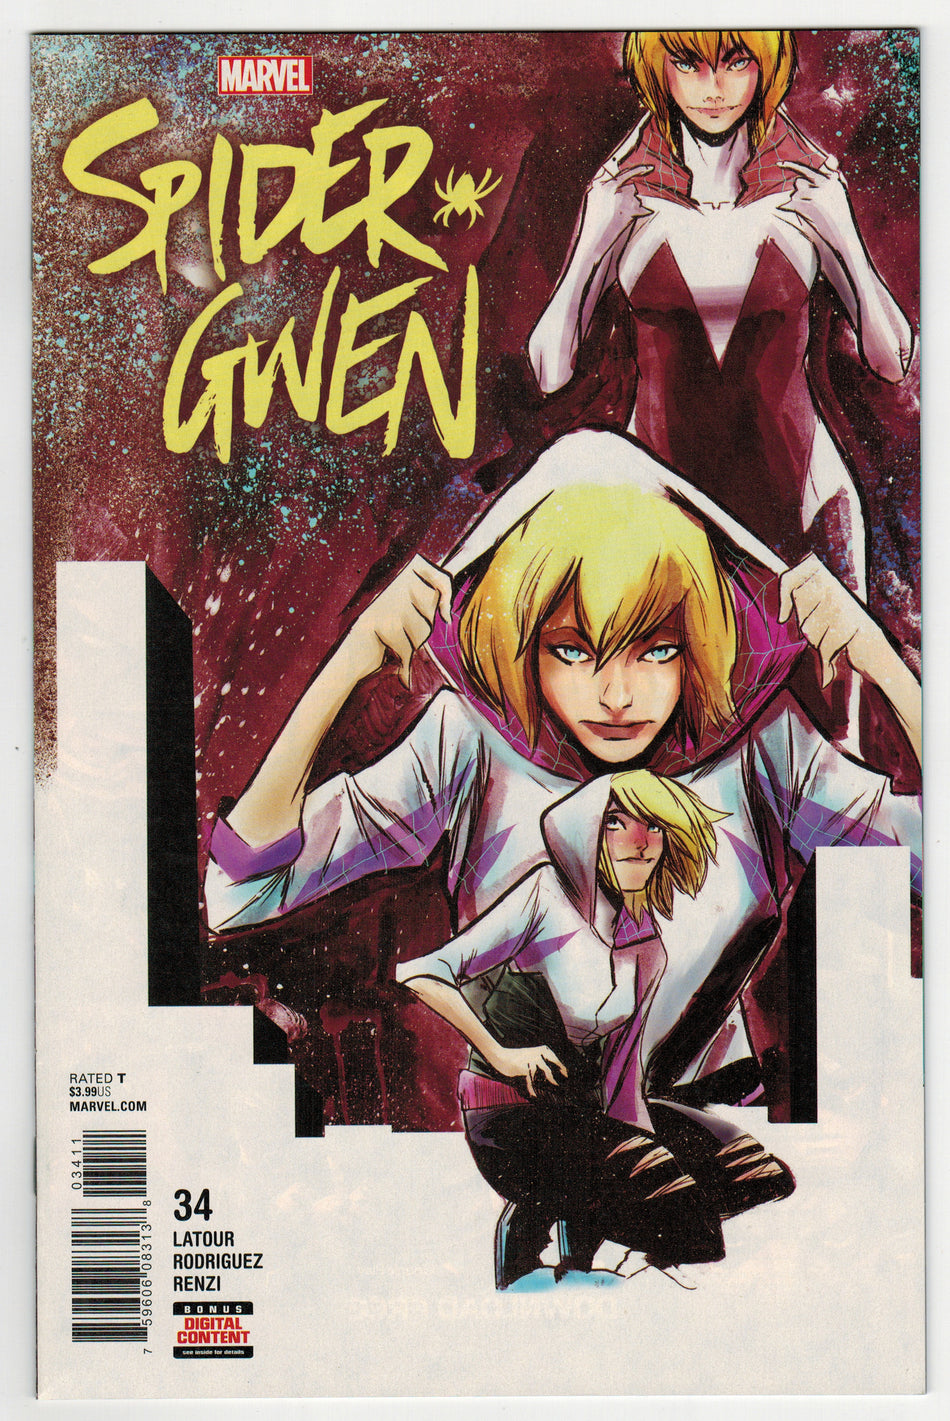 Spider-Gwen, Vol. 2 (2018)  Issue 34 Near Mint